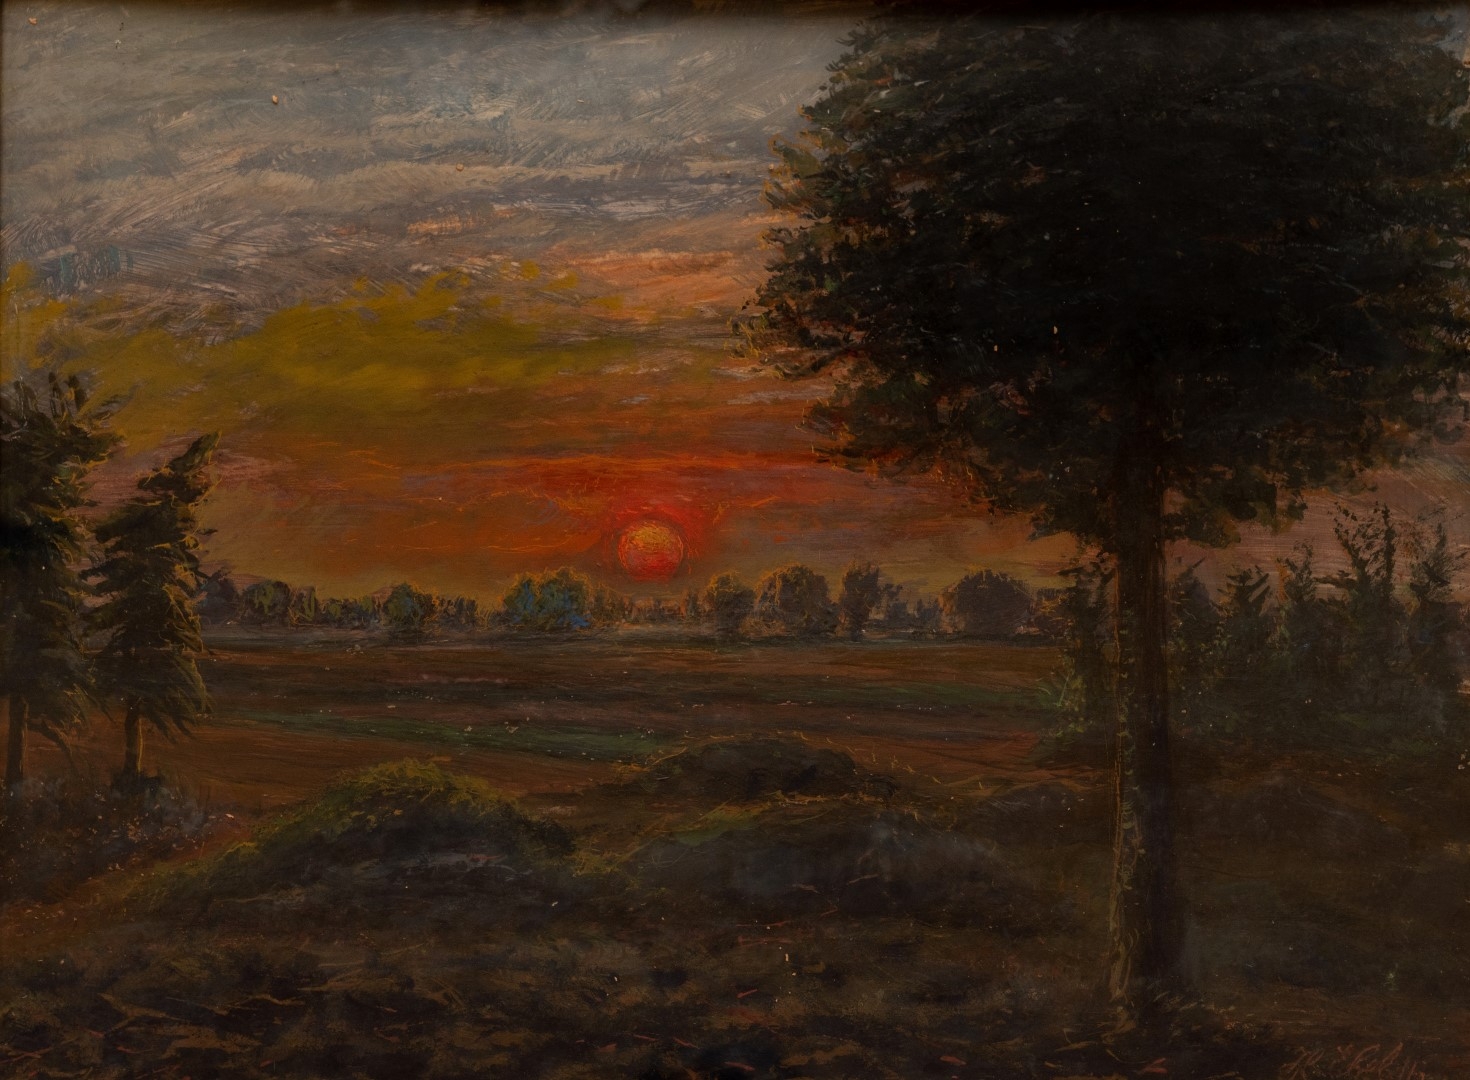  Coucher de soleil avec arbre, 1911, tempera sur carton, 48x63 cm, collection particulière